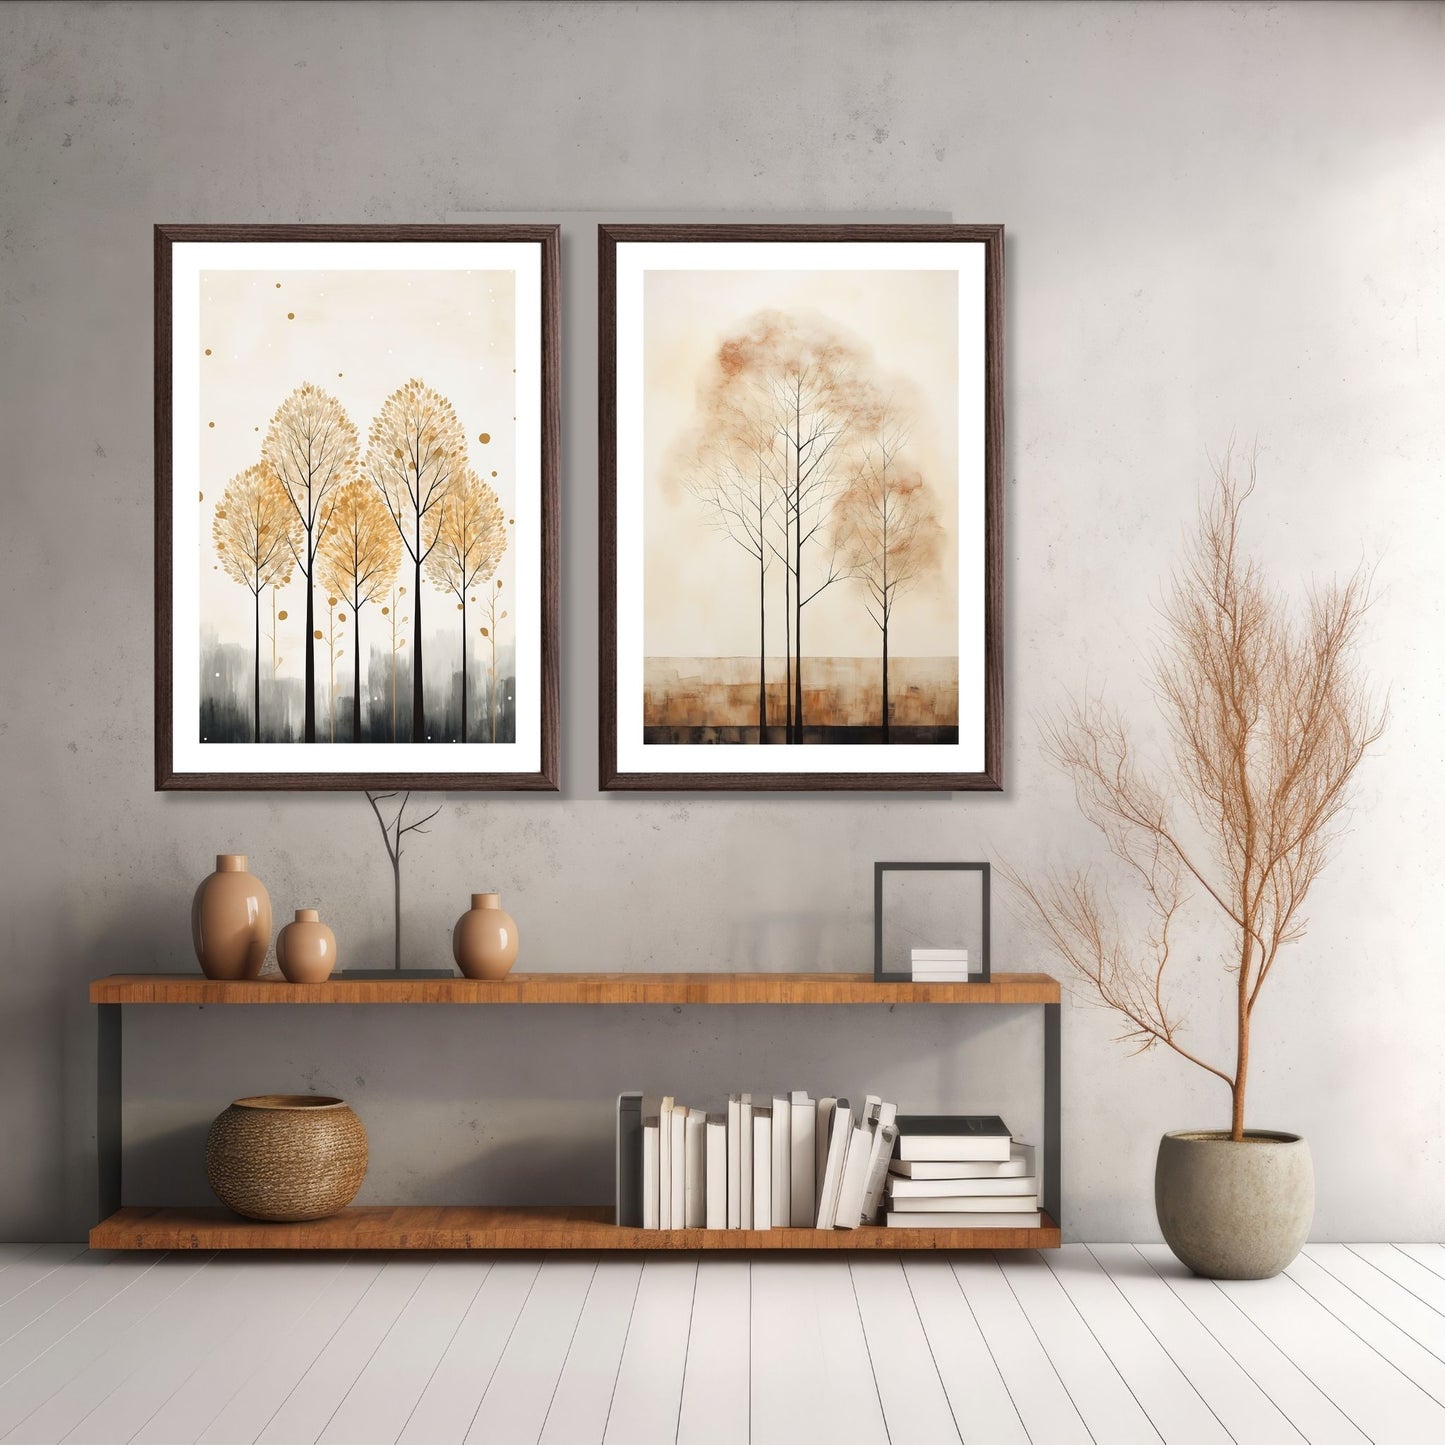 Abstract Forest - grafisk og abstrakt motiv av høye, slanke trær og skog i rust- og beige fargetoner Illustrasjon av motiv 2 og 3 i brun ramme.